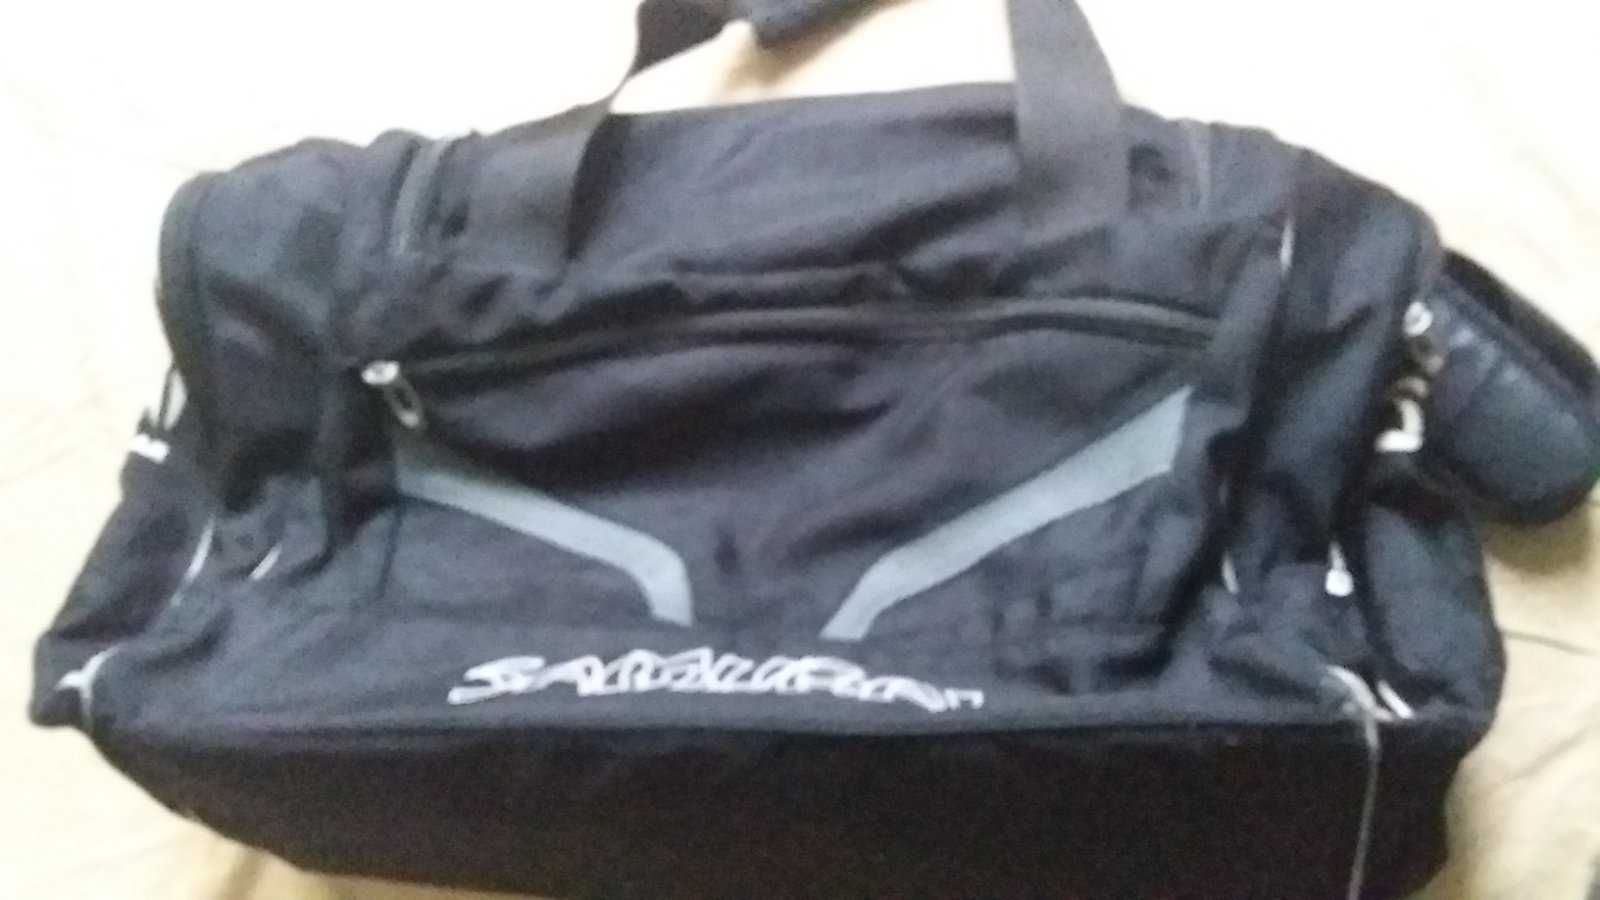 Сумка спортивна, сумка дорожна -Samurai Sportswear